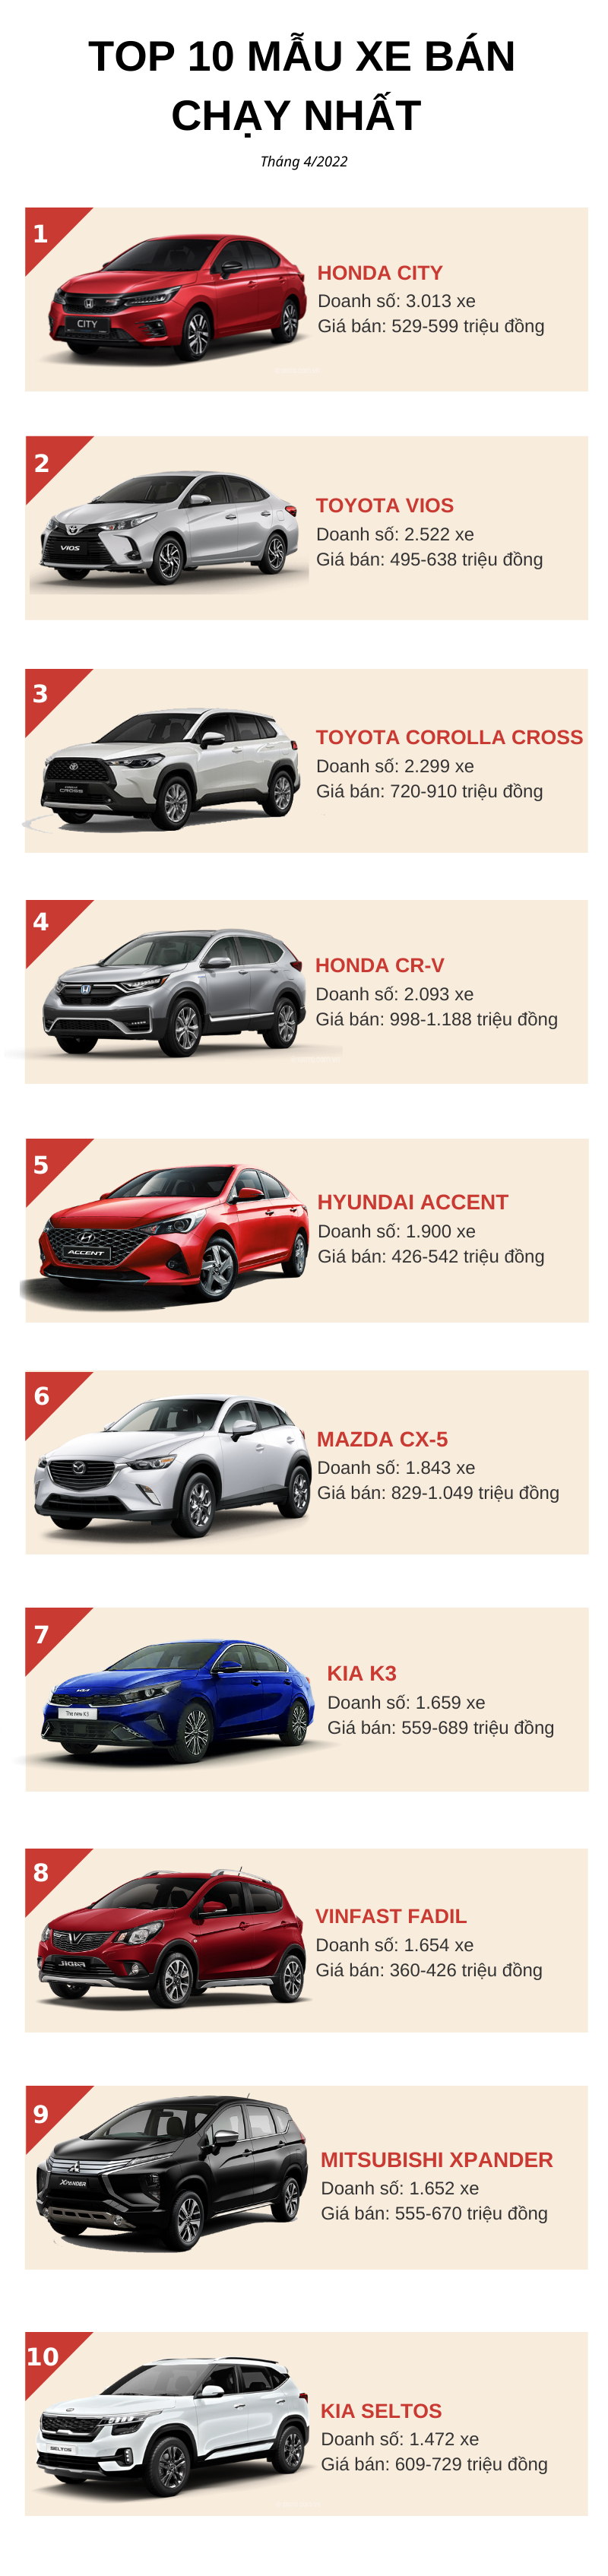 Top 10 ô tô bán chạy nhất tháng 4/2022: Lên ngôi đầy bất ngờ, Hyundai Accent và Fadil đều tụt hạng - Ảnh 1.